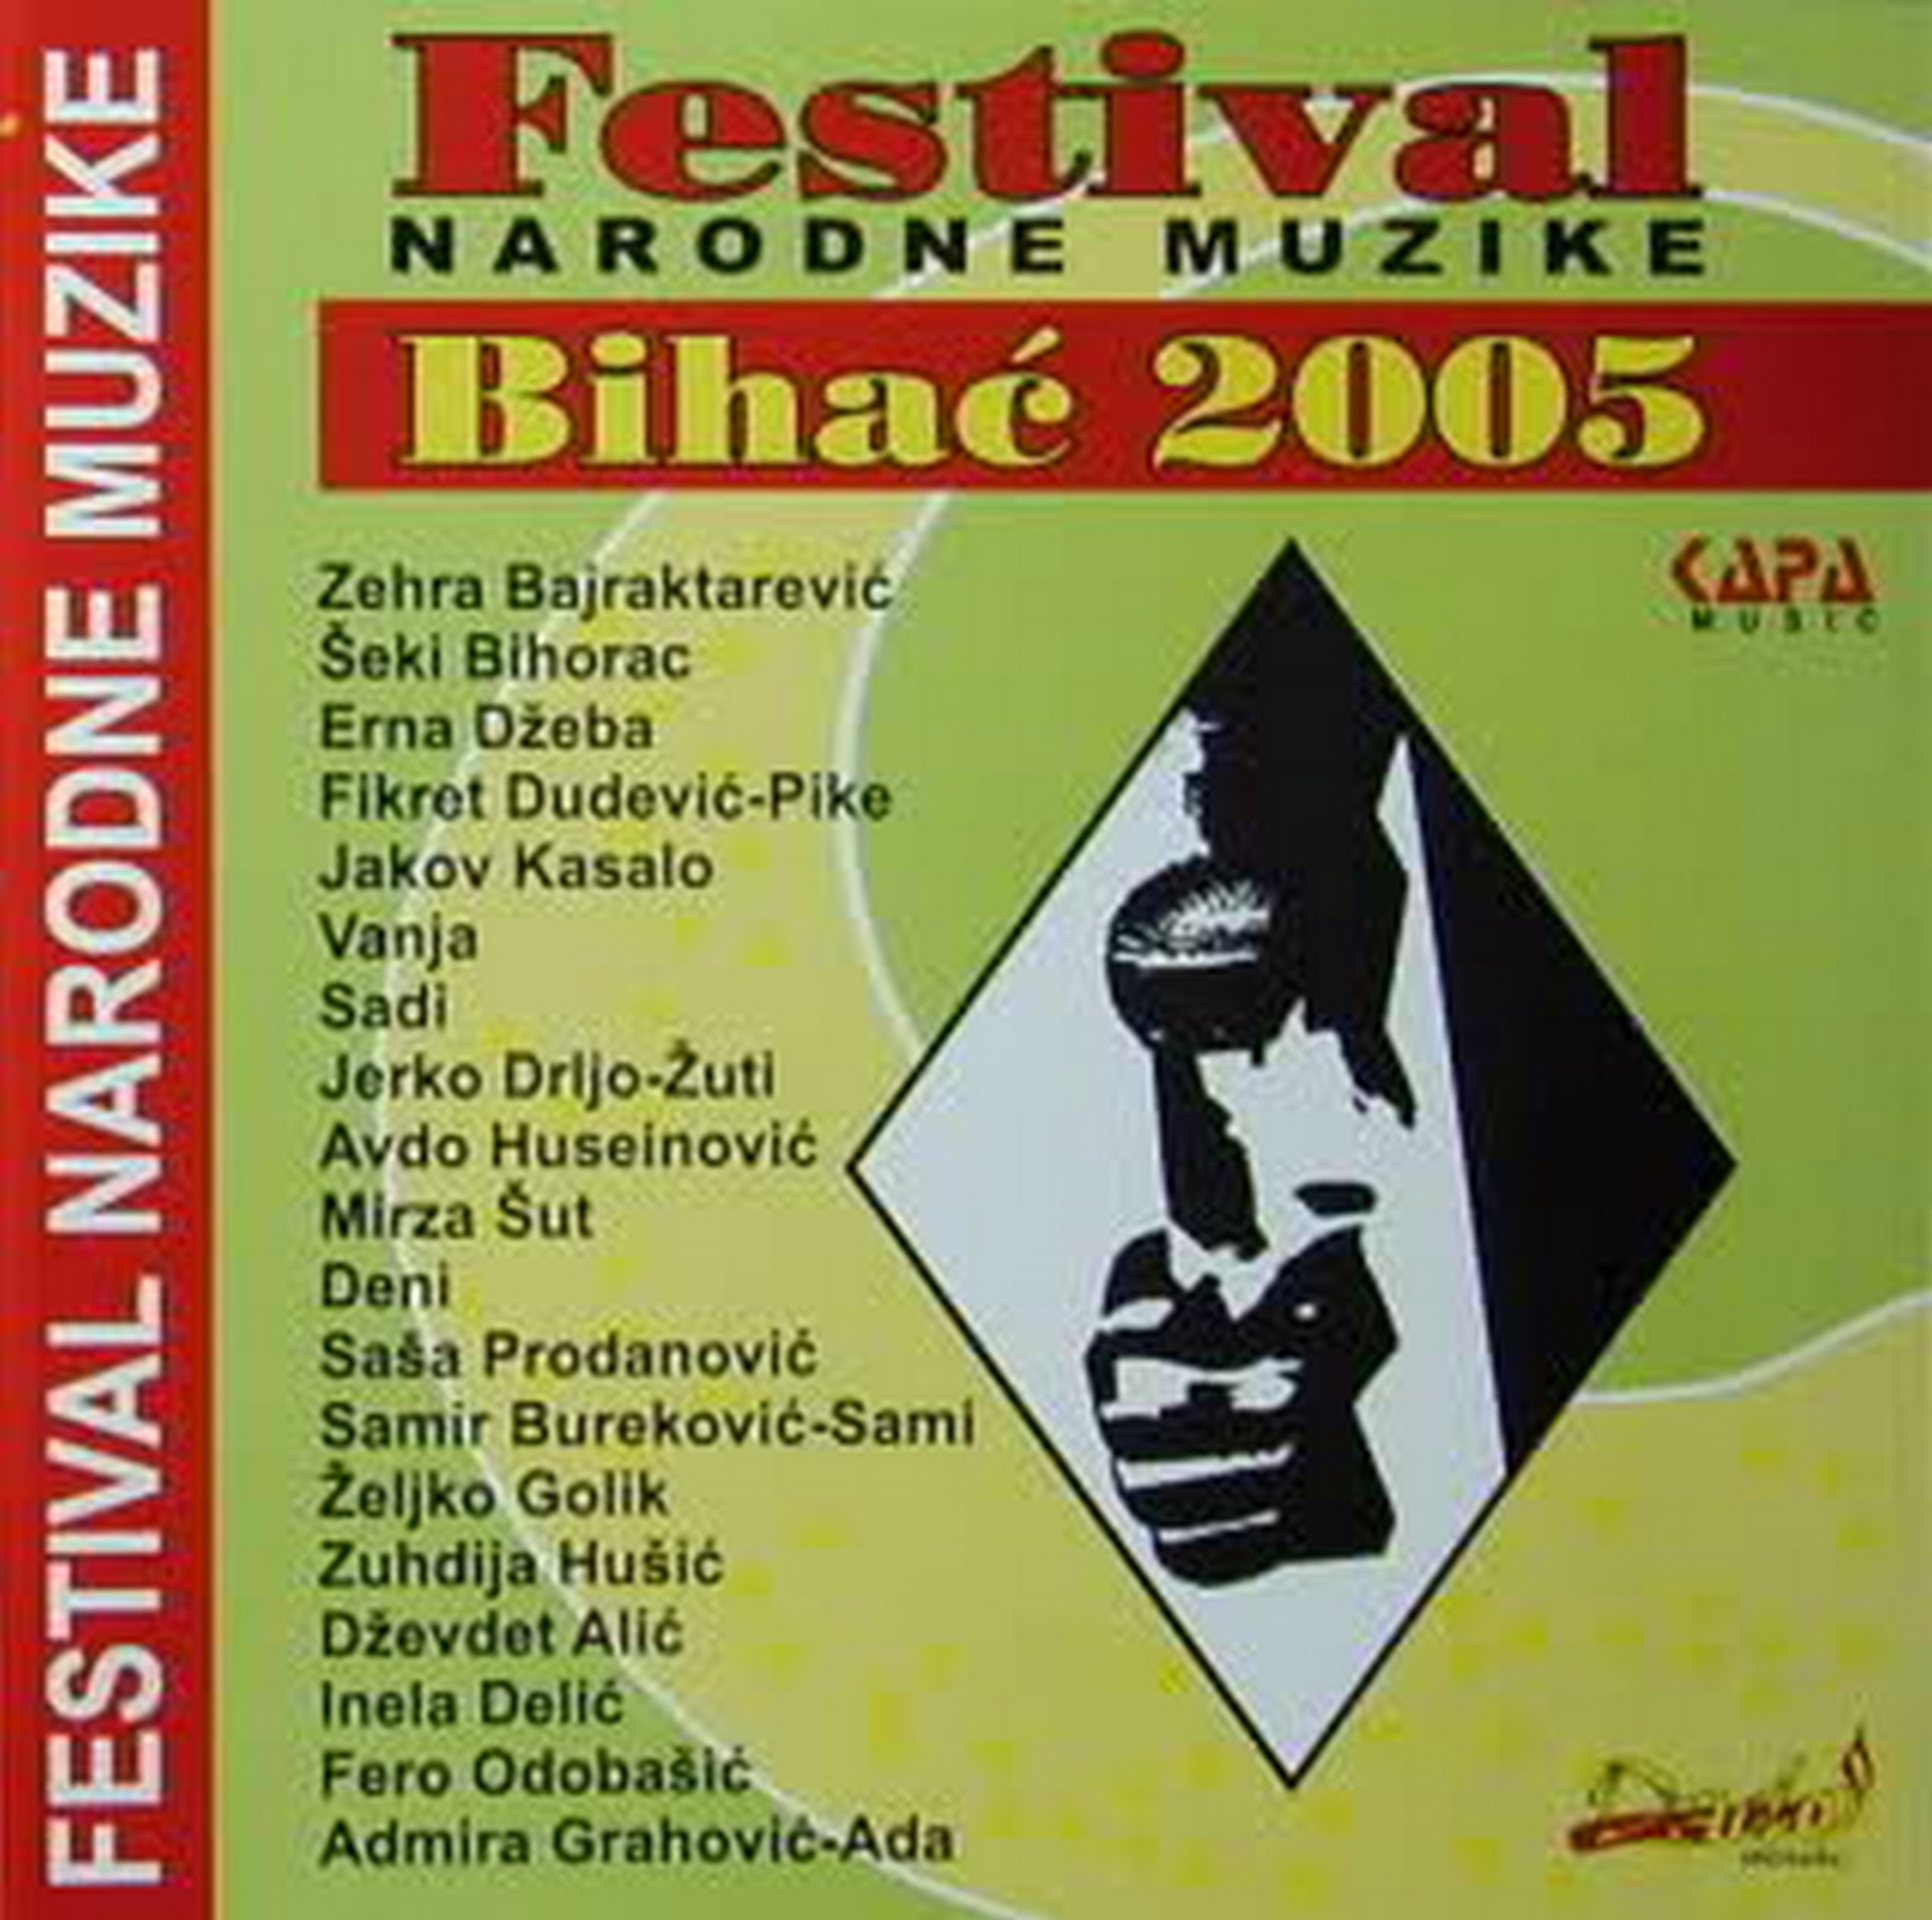 Bihacki Festival 2005